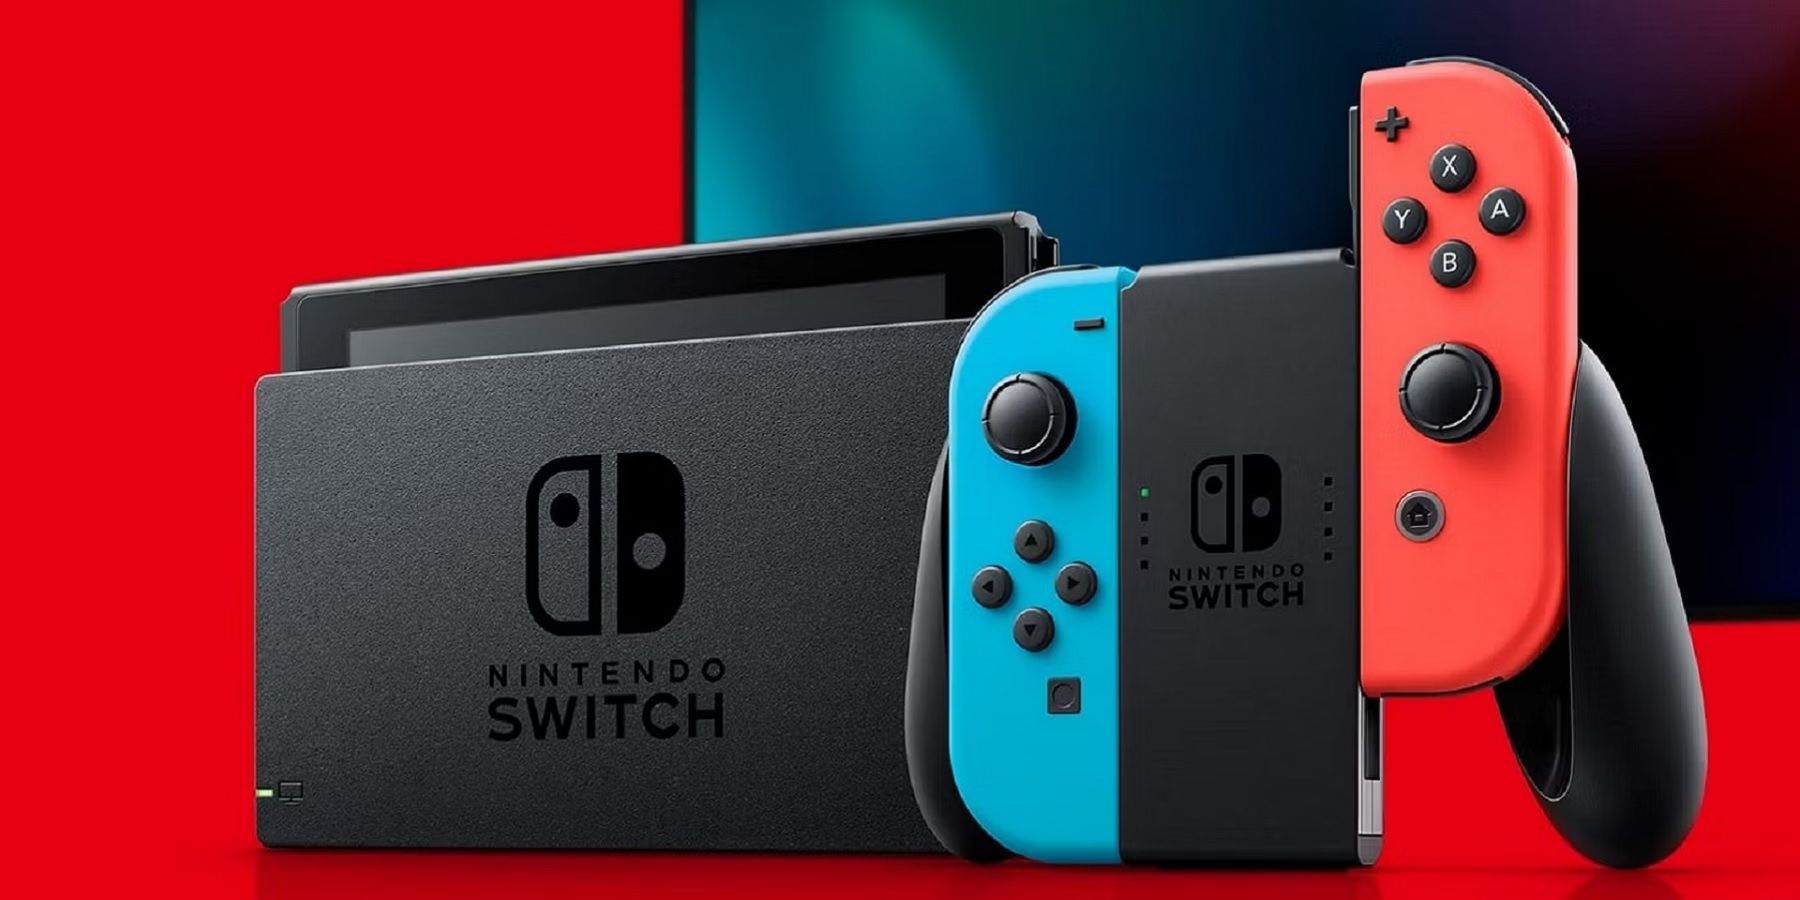 Nintendo Switch gedockt met controller